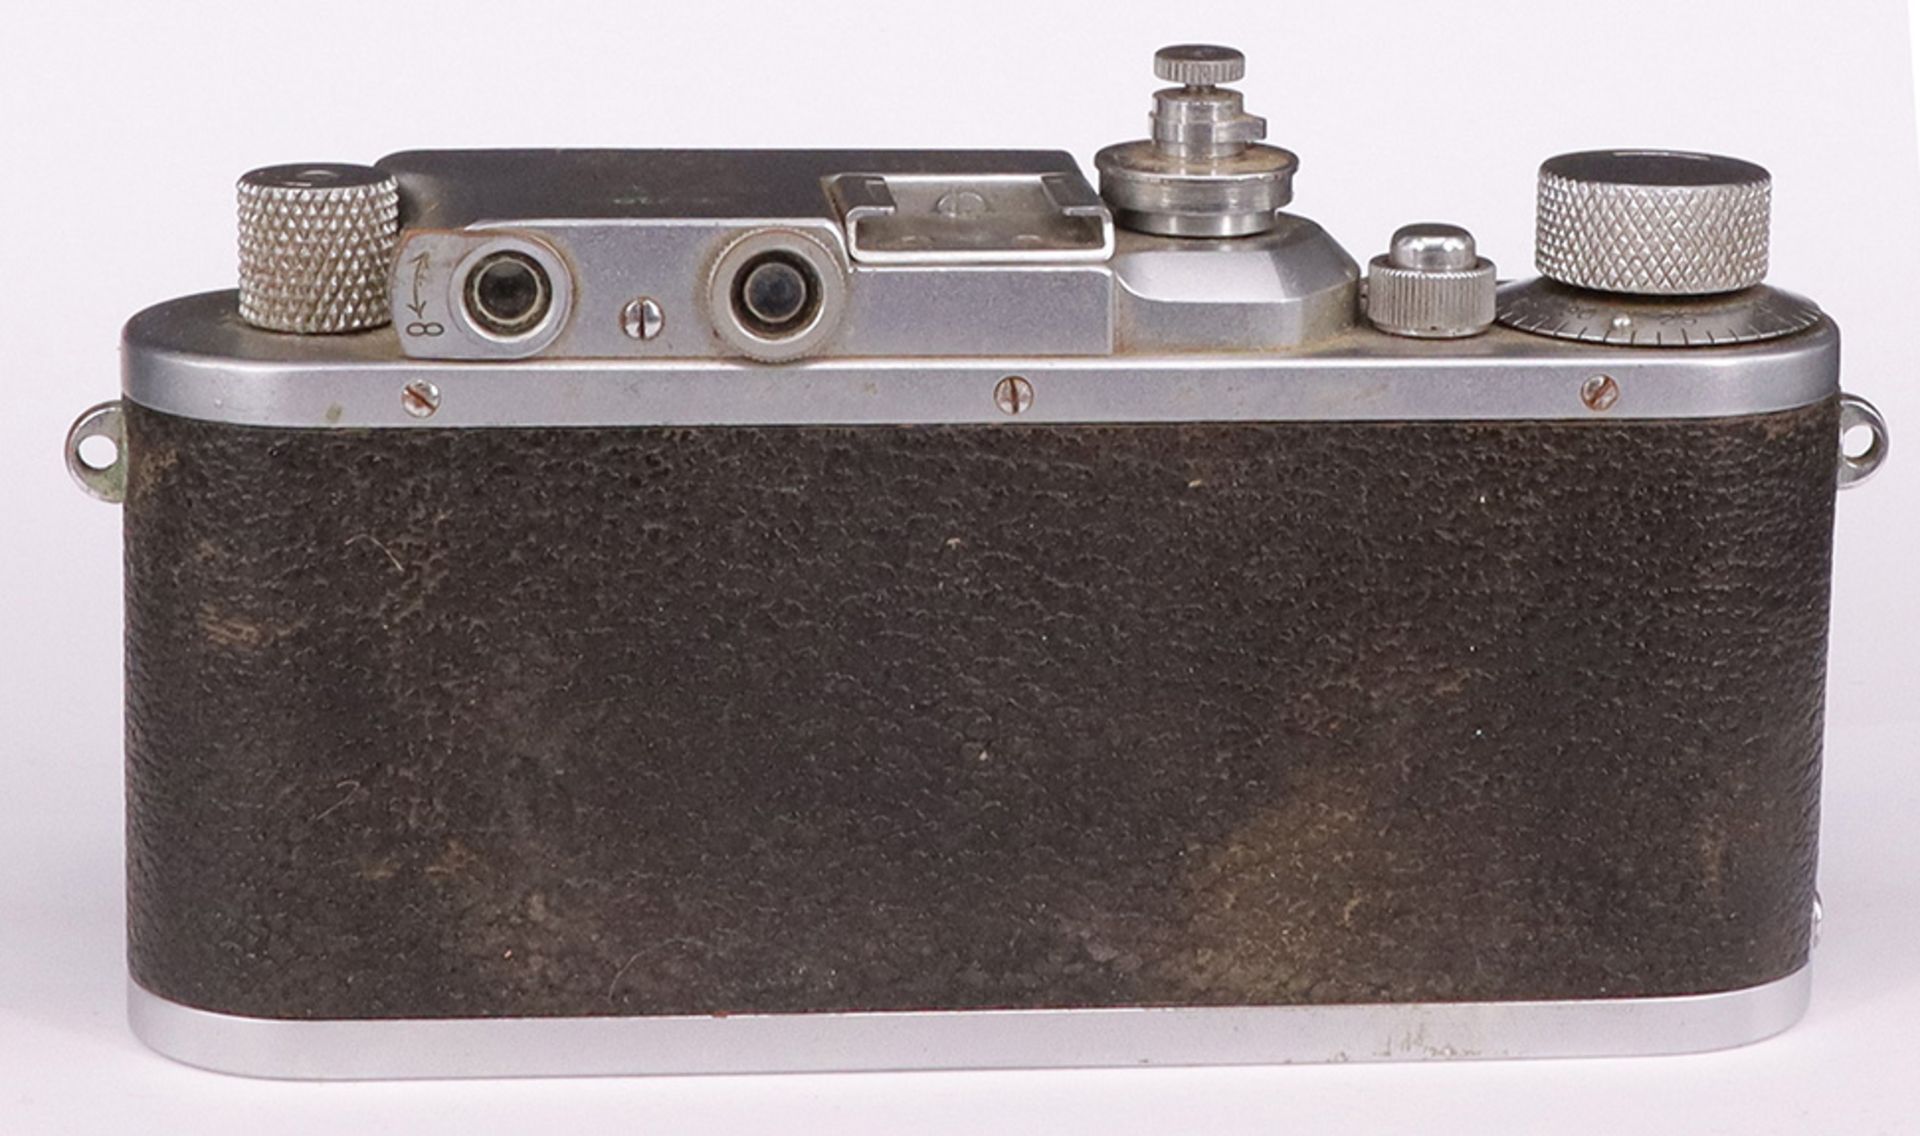 Leica, D.R.P. Ernst Leitz, Wetzlar, Kamera Nr. 261592, Objektiv f=5 cm 1:2, No 405024, Zustand: - Image 2 of 6